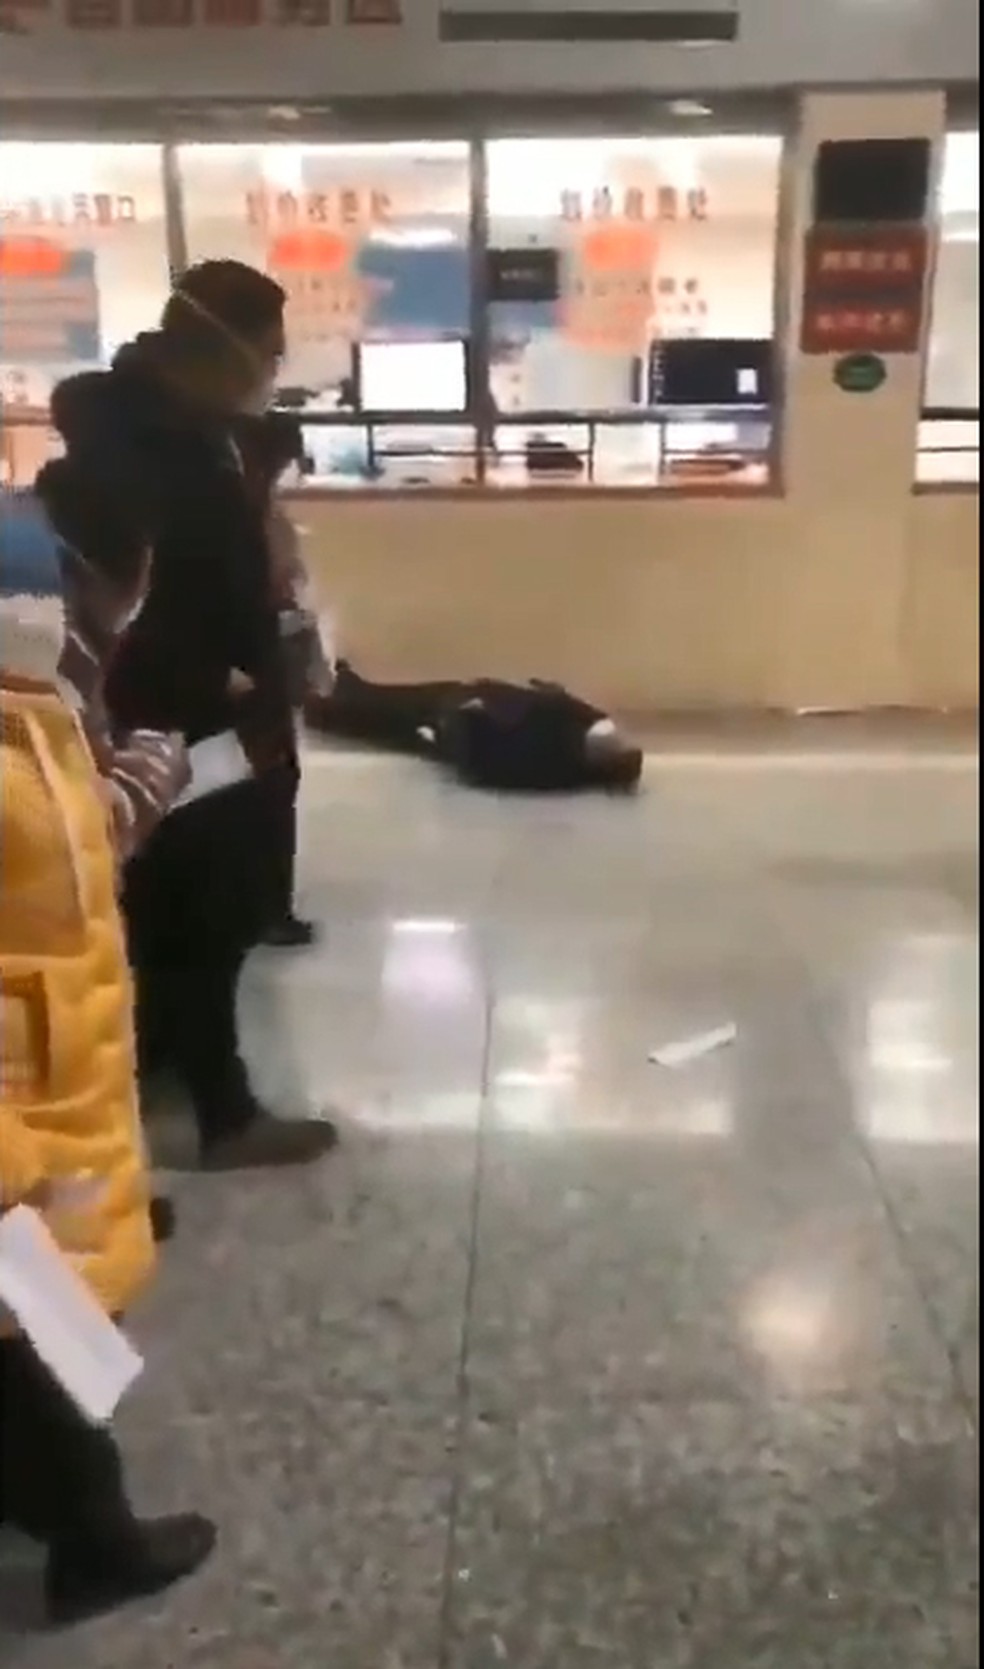 Vídeo mostra homem caído em frente a um vidro com inscrições — Foto: Reprodução